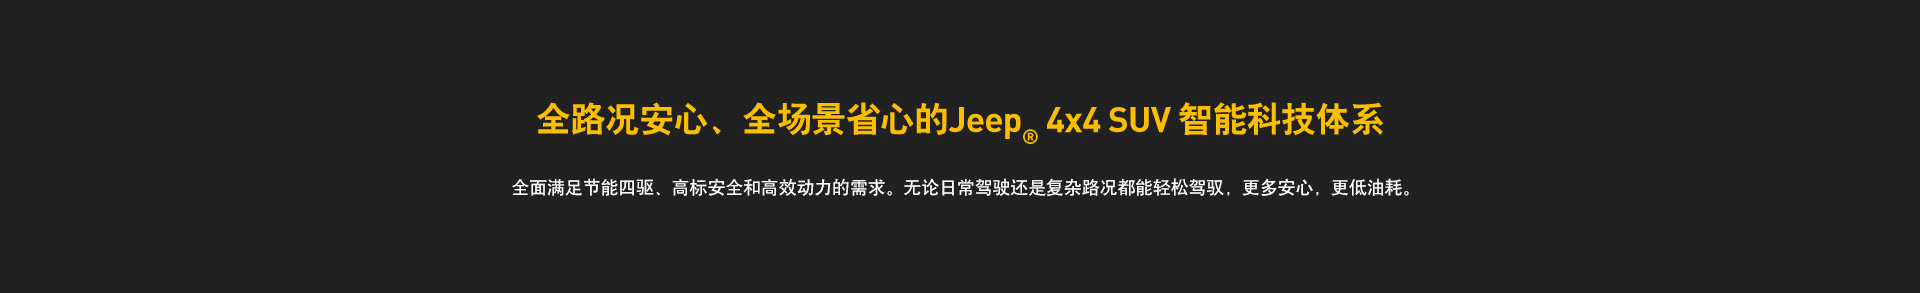 全新Jeep指南者一其他(图1)